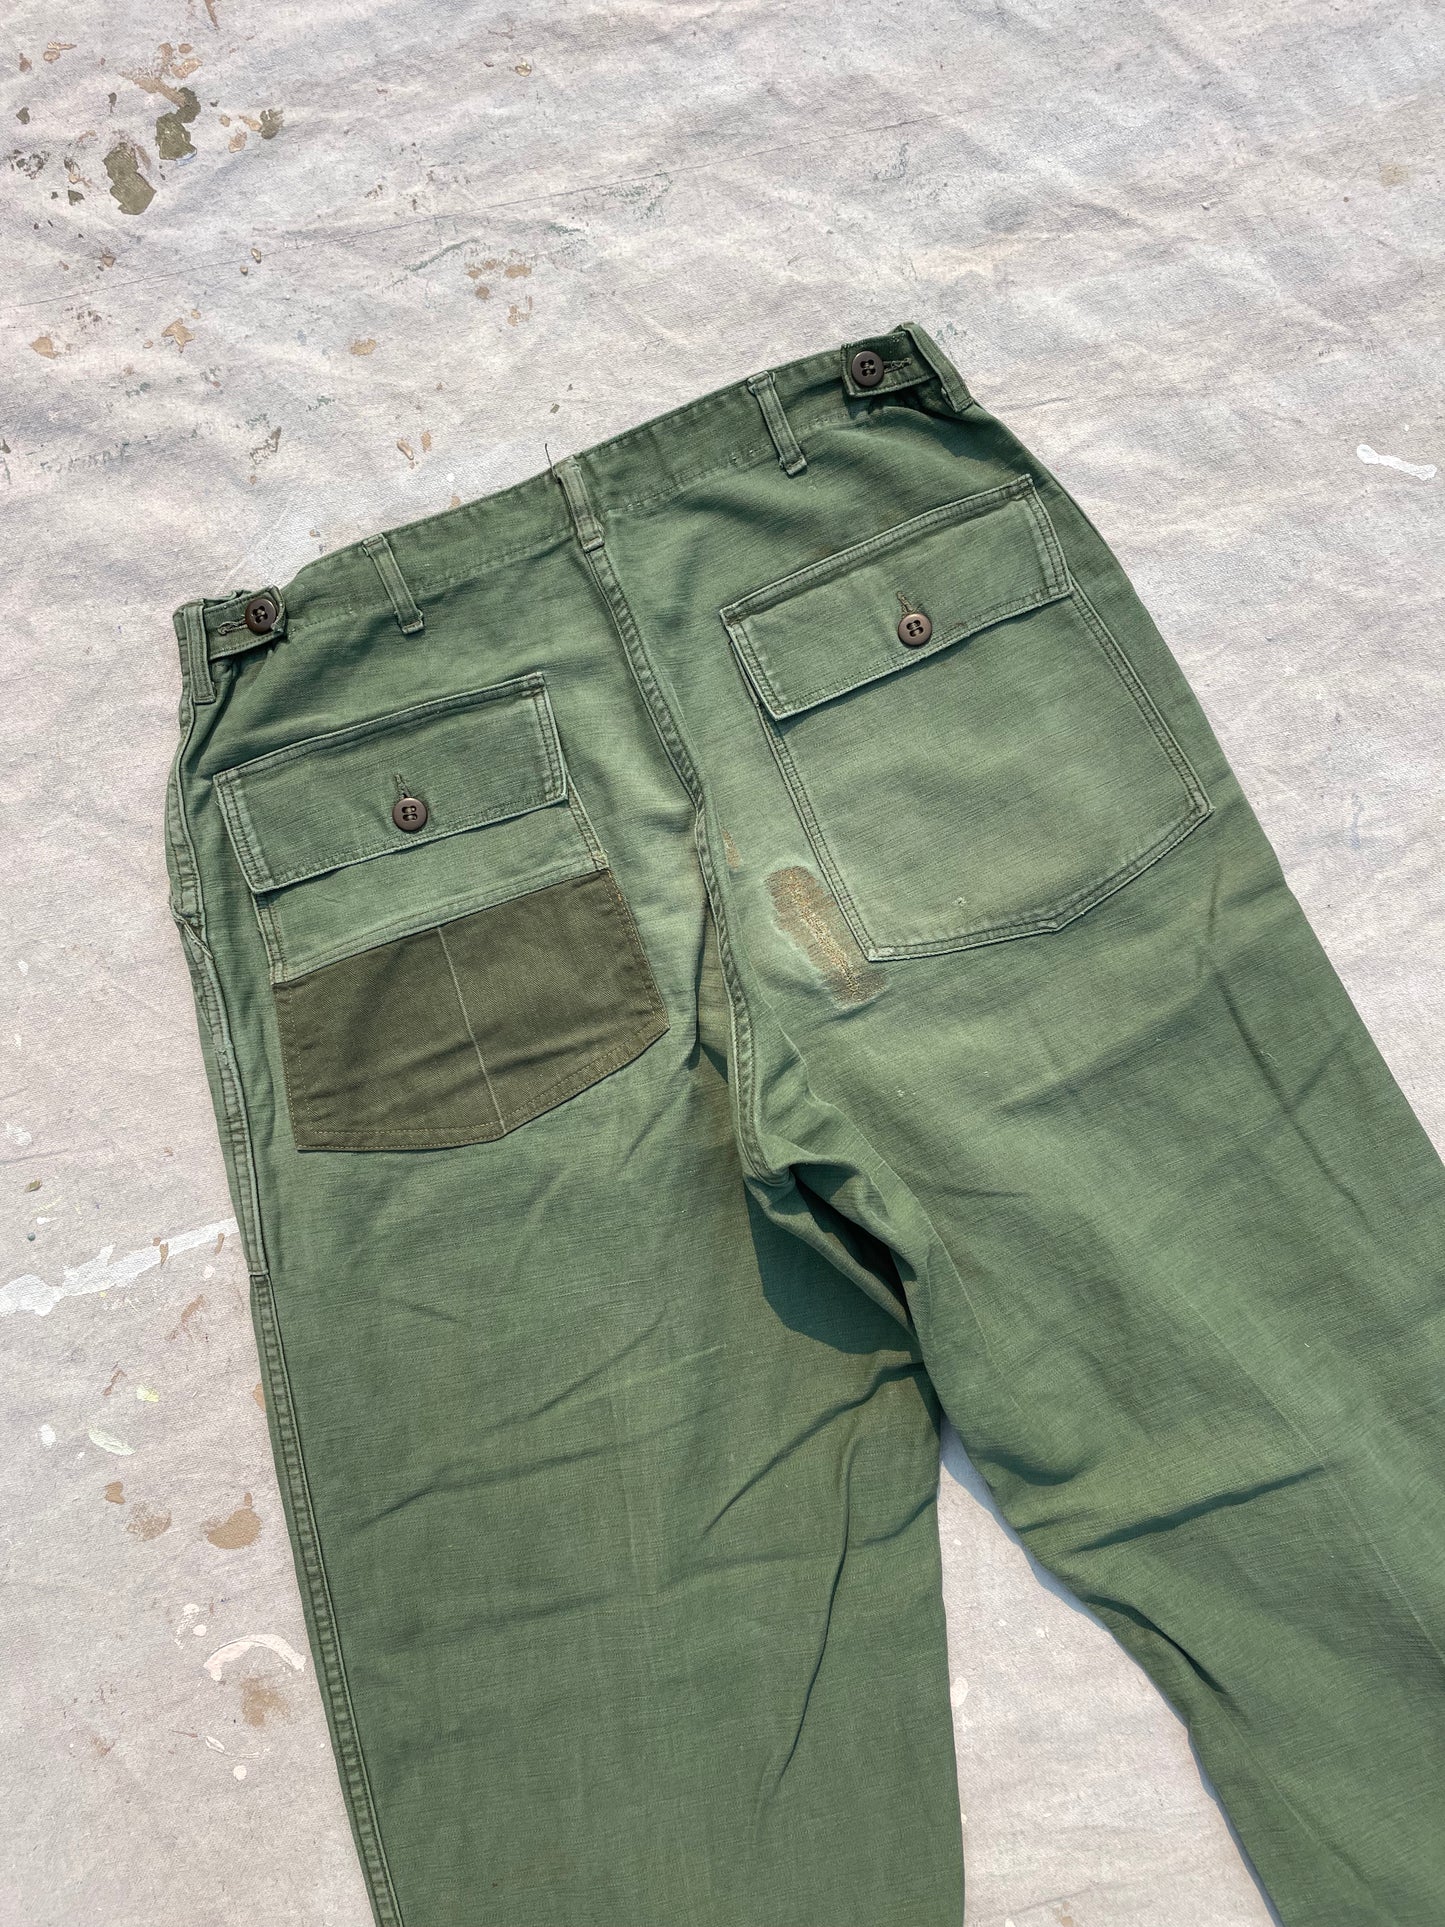 50s OG-107 Army Fatigue Baker Pants